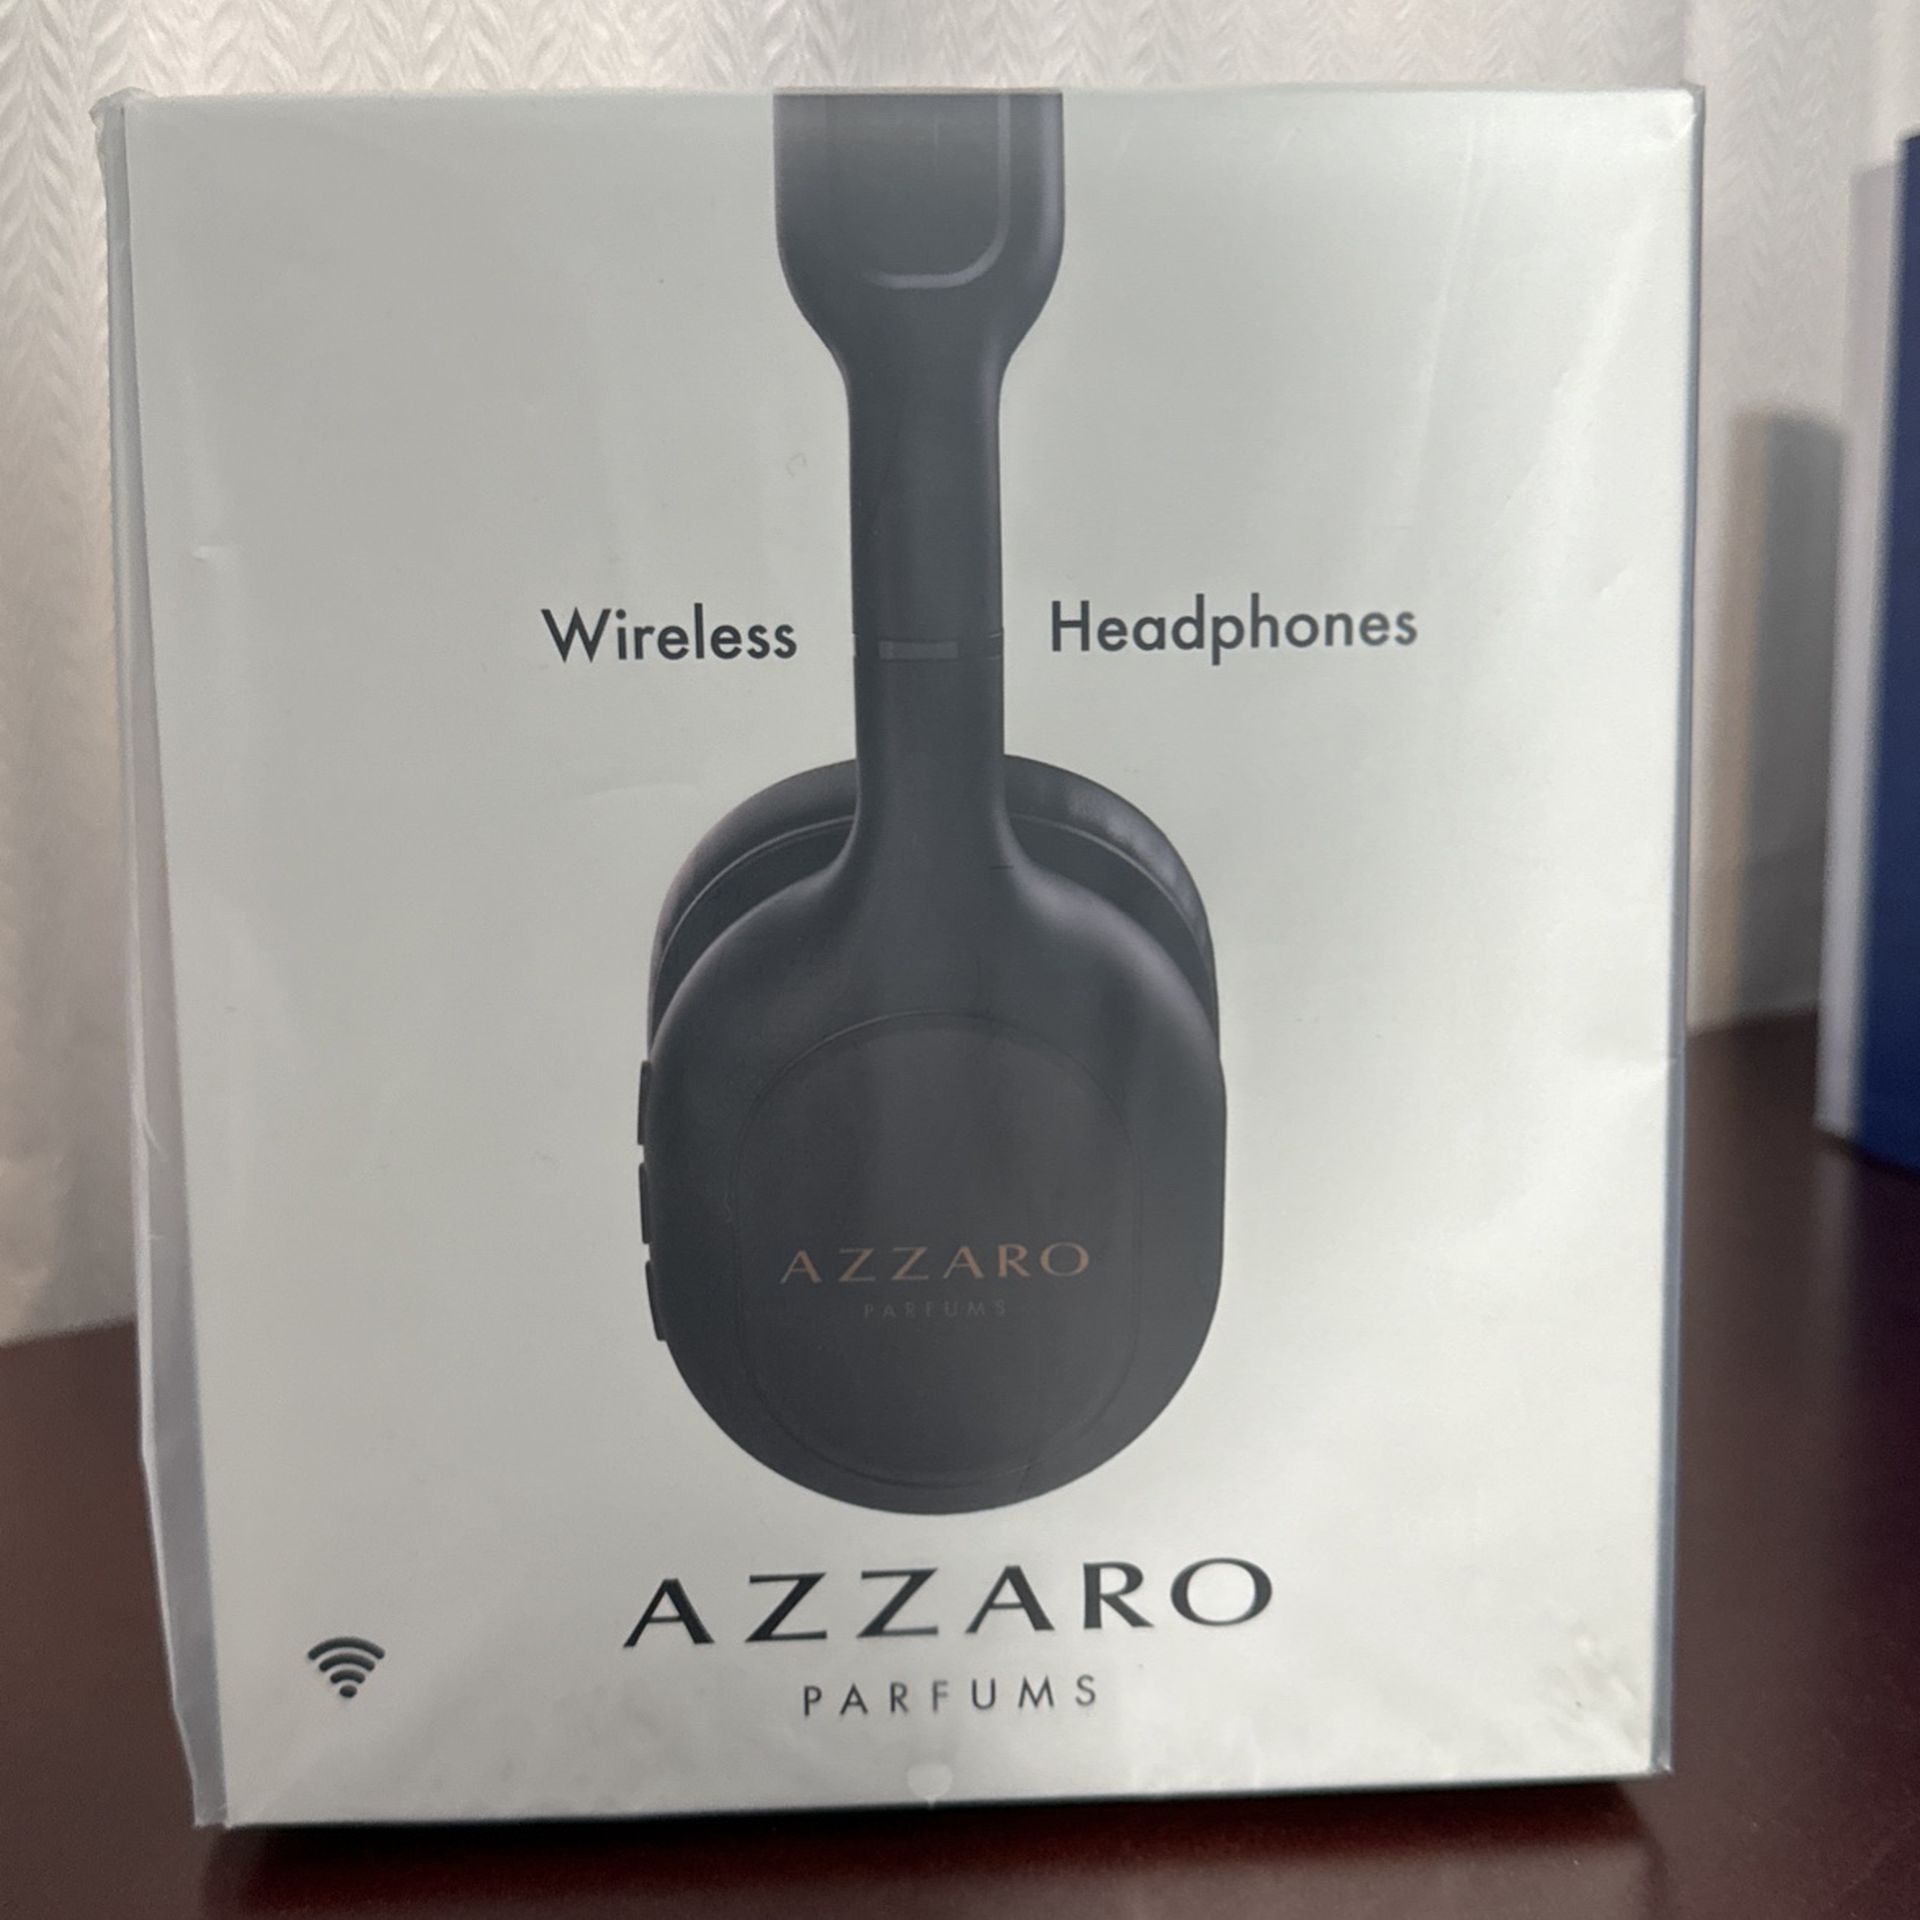 Azzaro Parfums Wireless Headphones